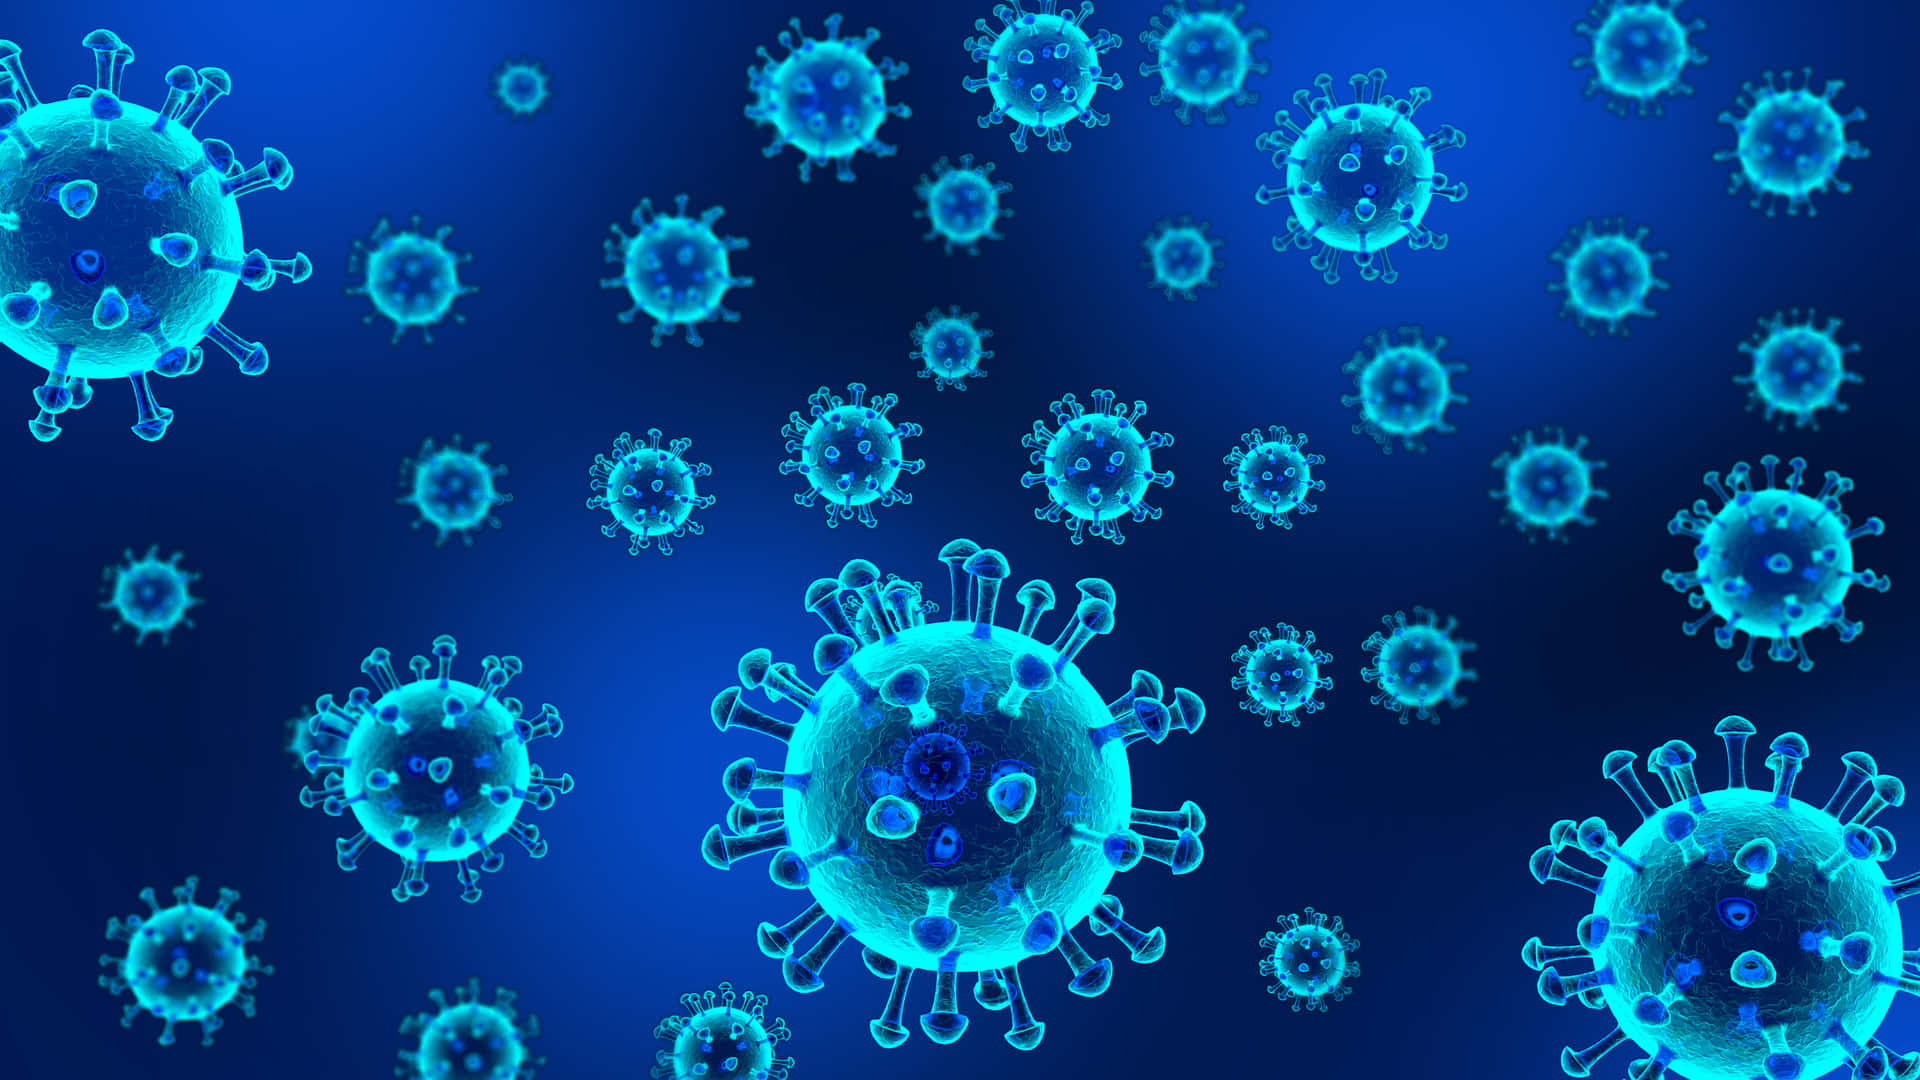 Coronaviruses In Blue And White